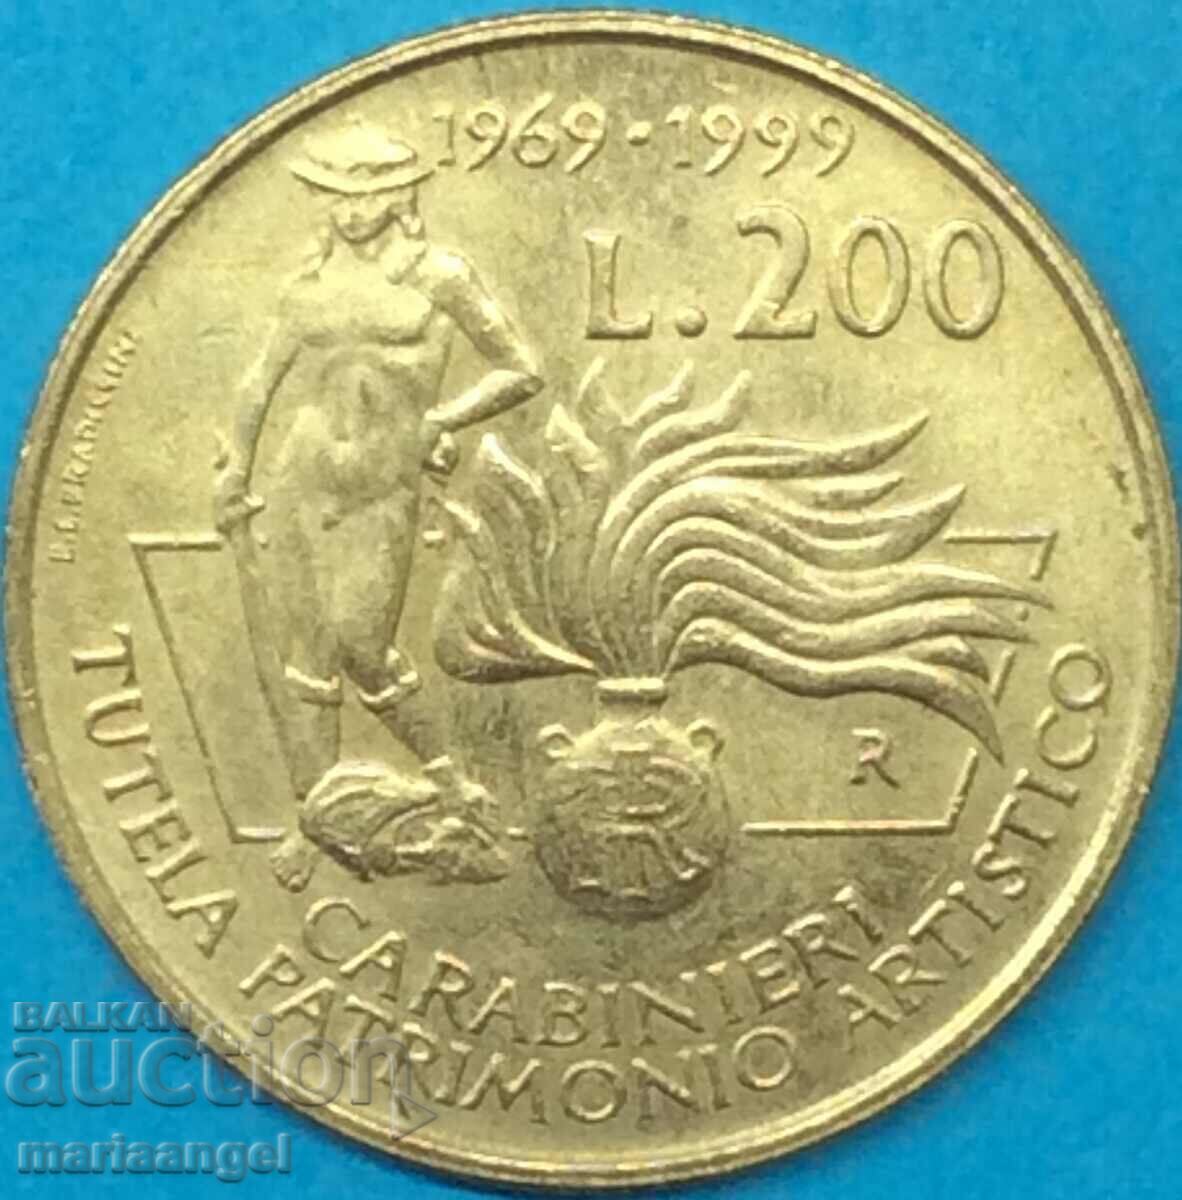 200 Lire 1999 Italy